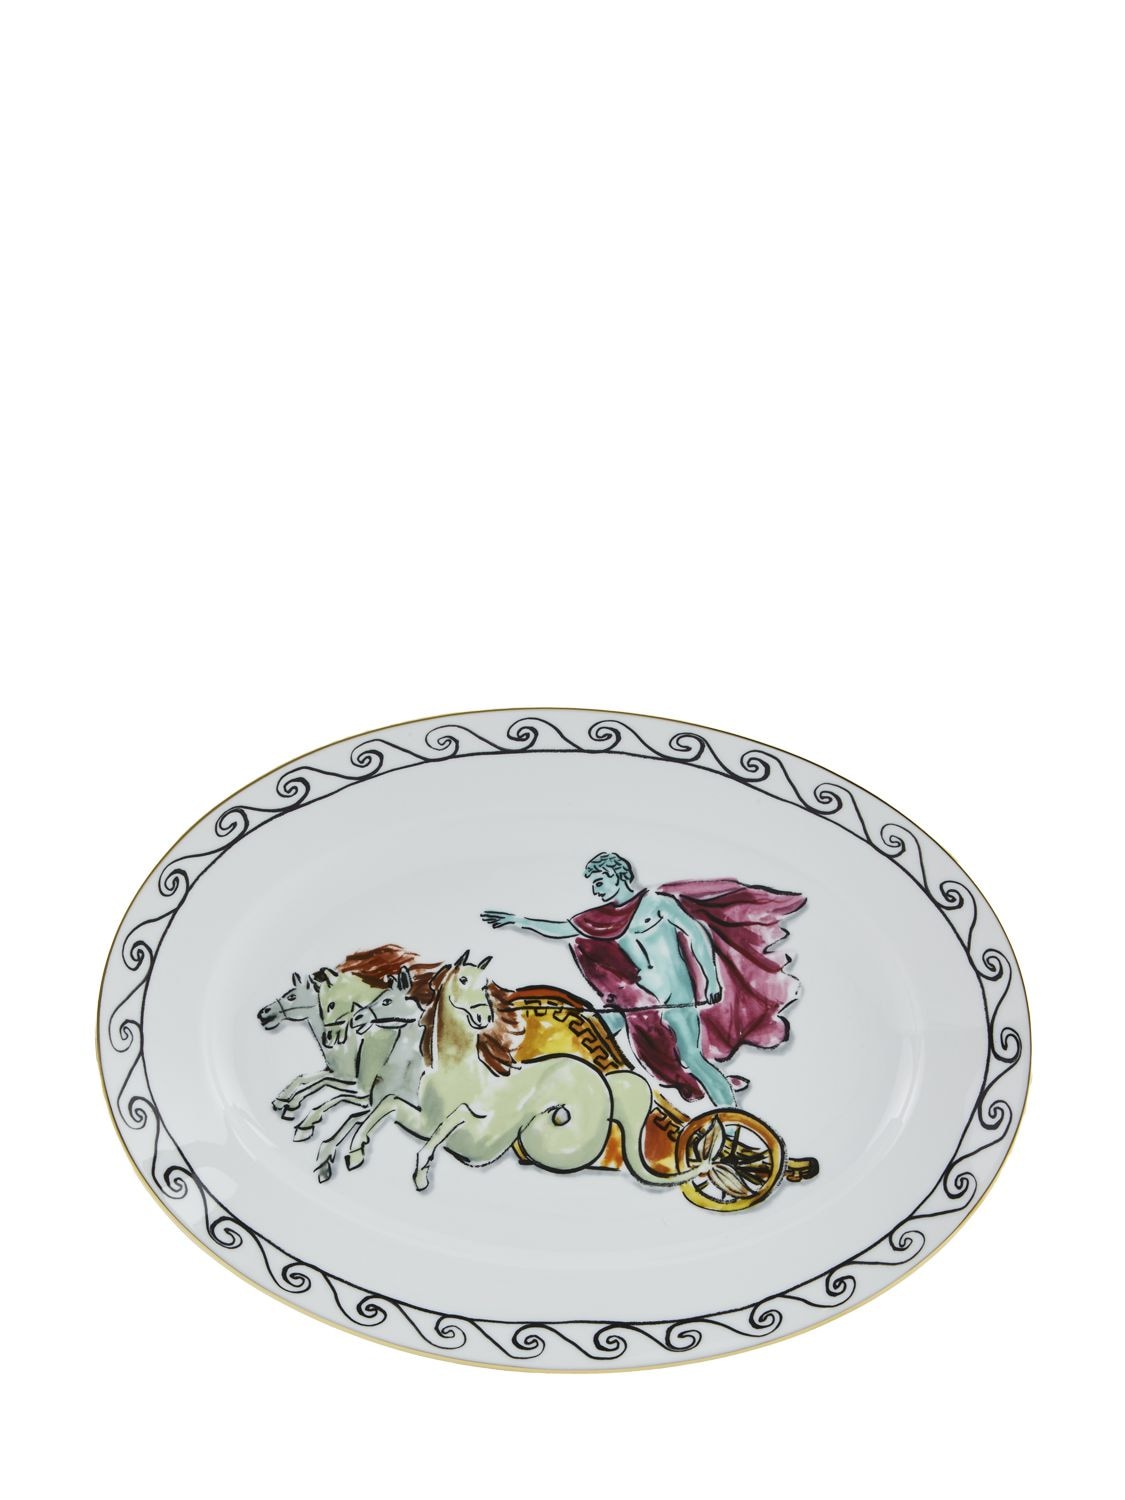 Ginori 1735 34cm Nettuno Oval Porcelain Platter In White